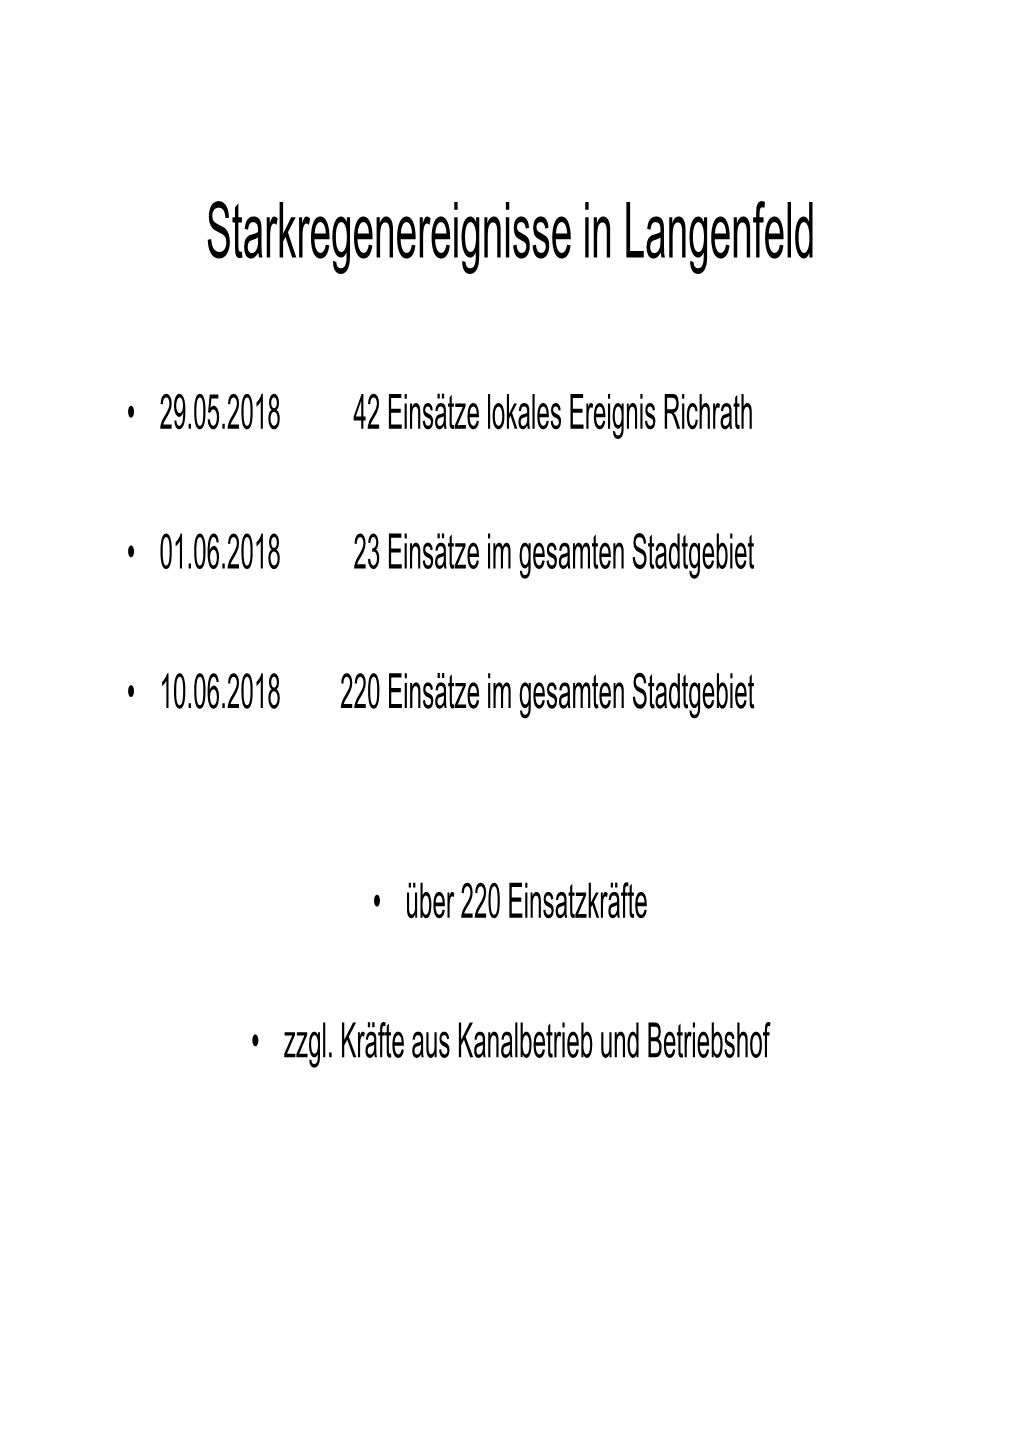 Starkregenereignisse in Langenfeld [Kompatibilitätsmodus]